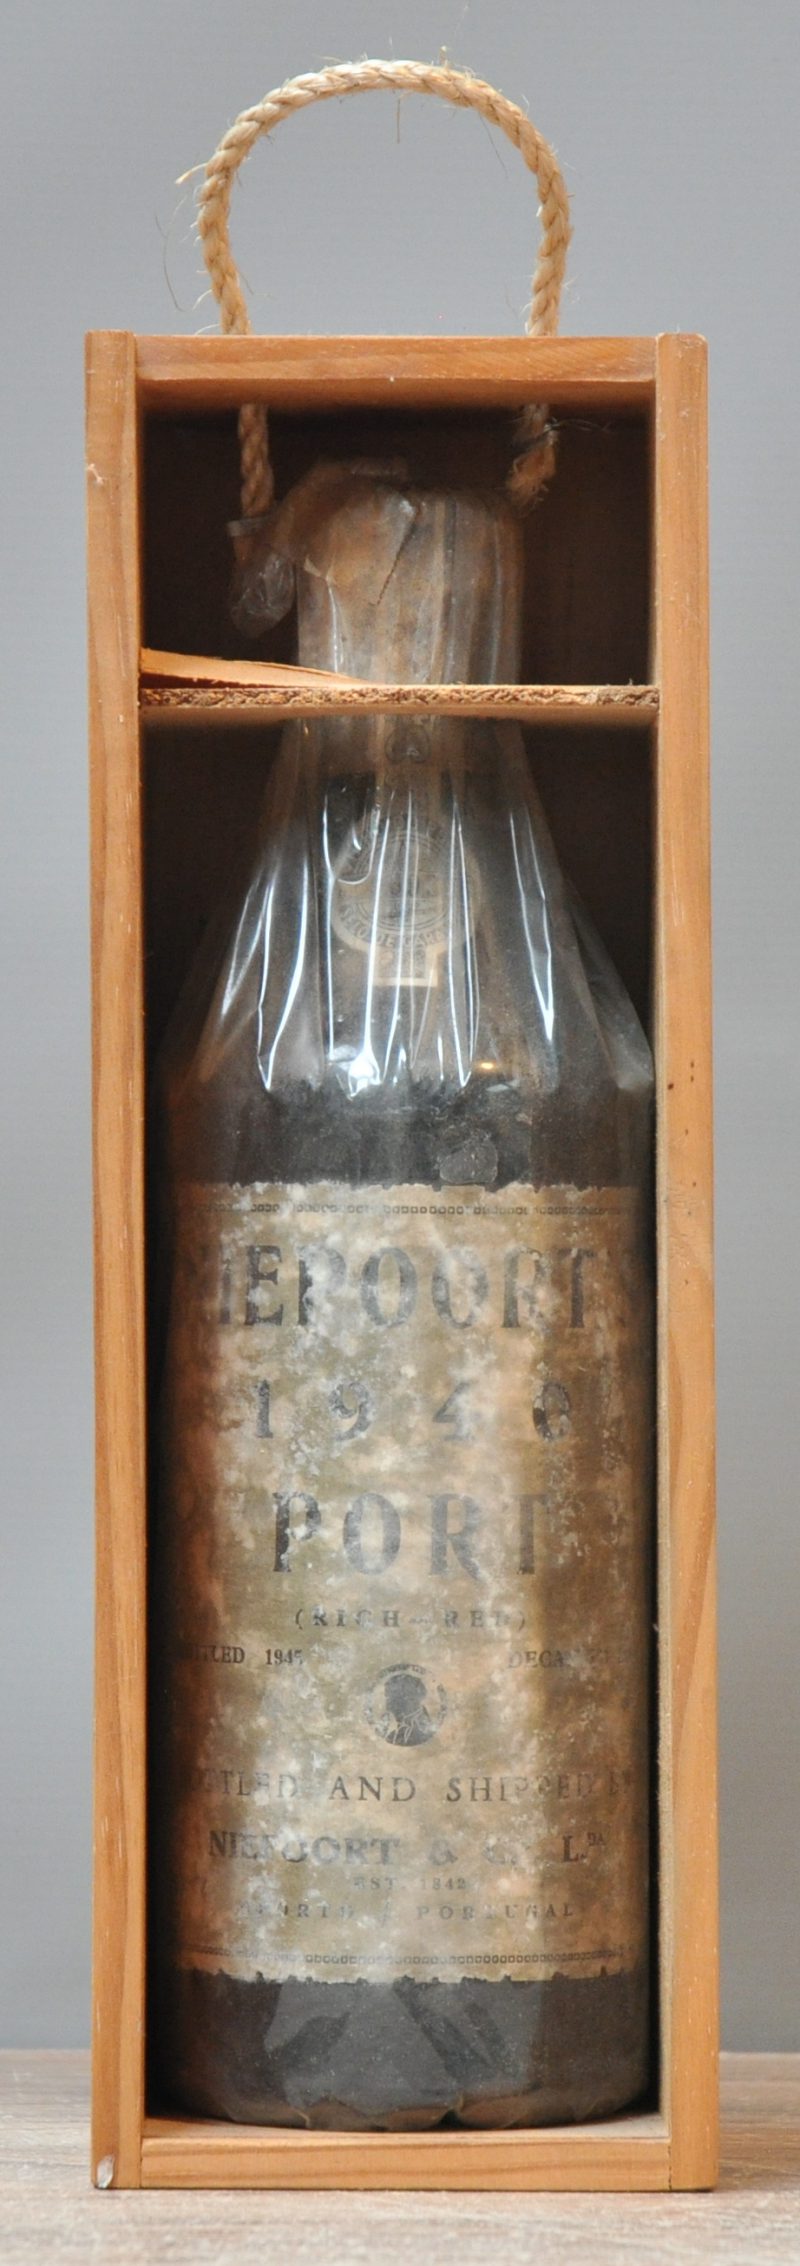 Niepoort Porto     O.K. 1940  aantal: 1 Bt. bottled 1945, decanted 1976